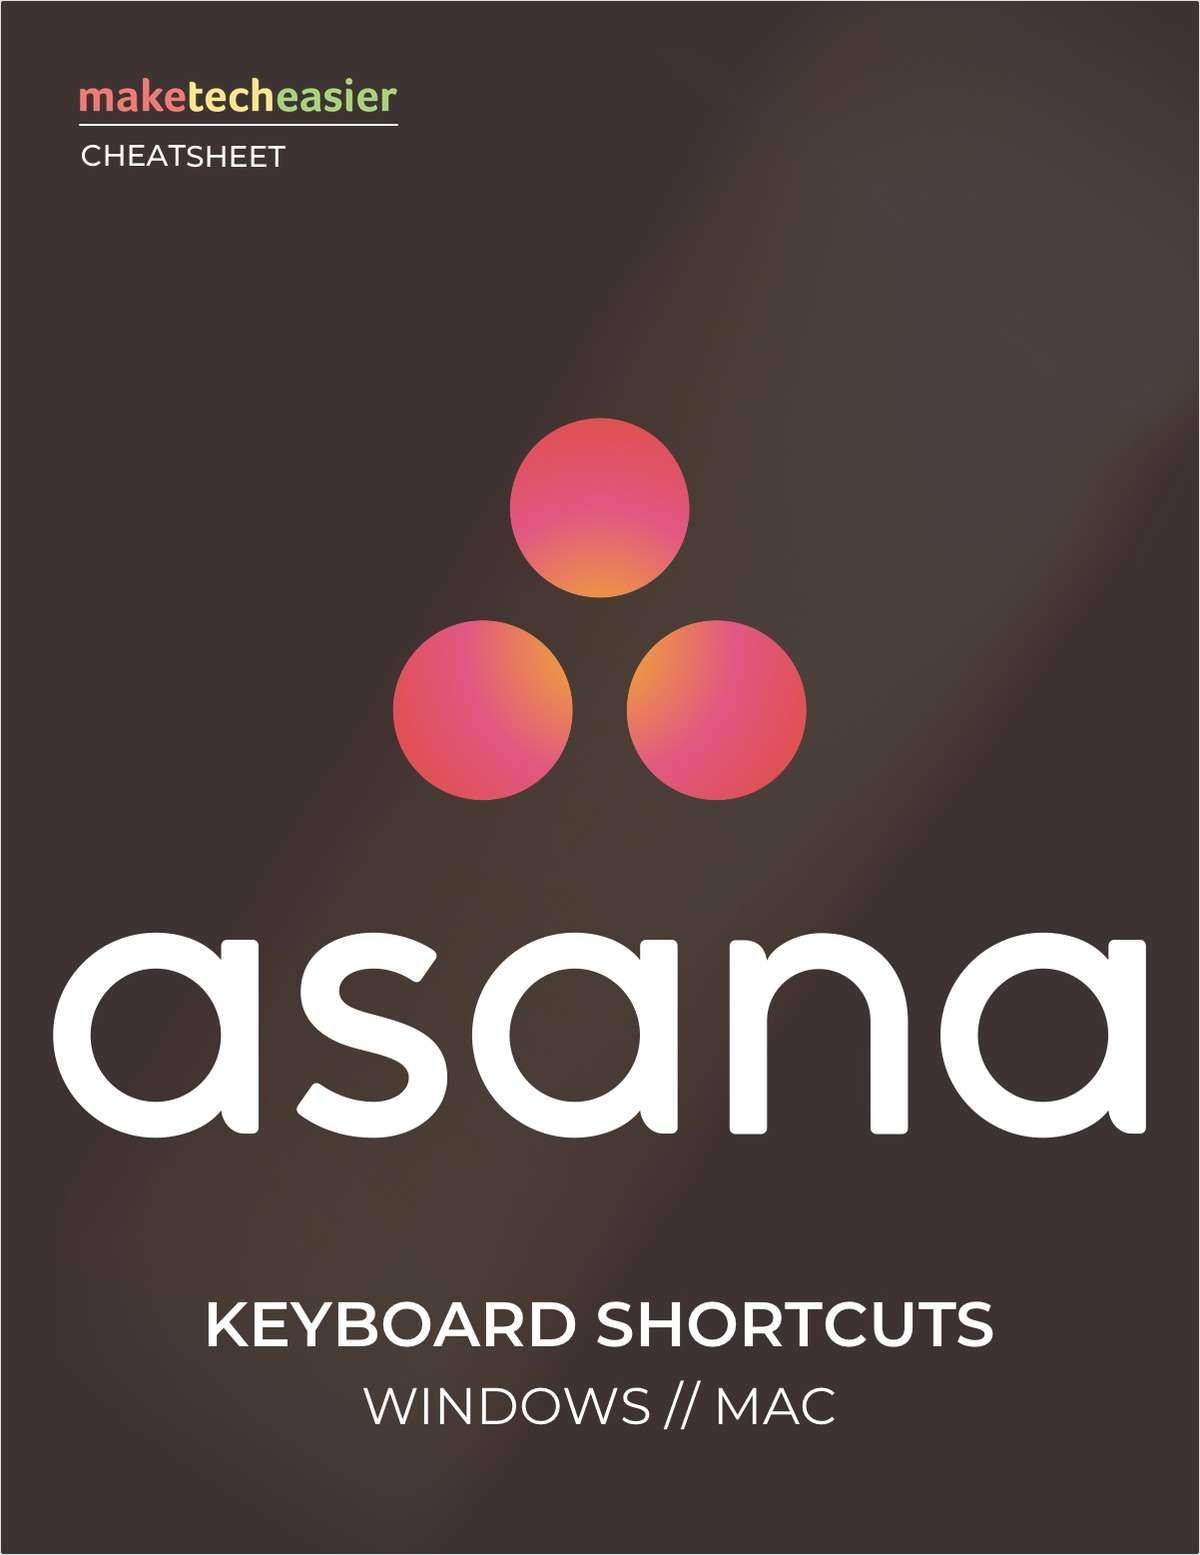 Asana Keyboard Shortcuts Cheat sheet